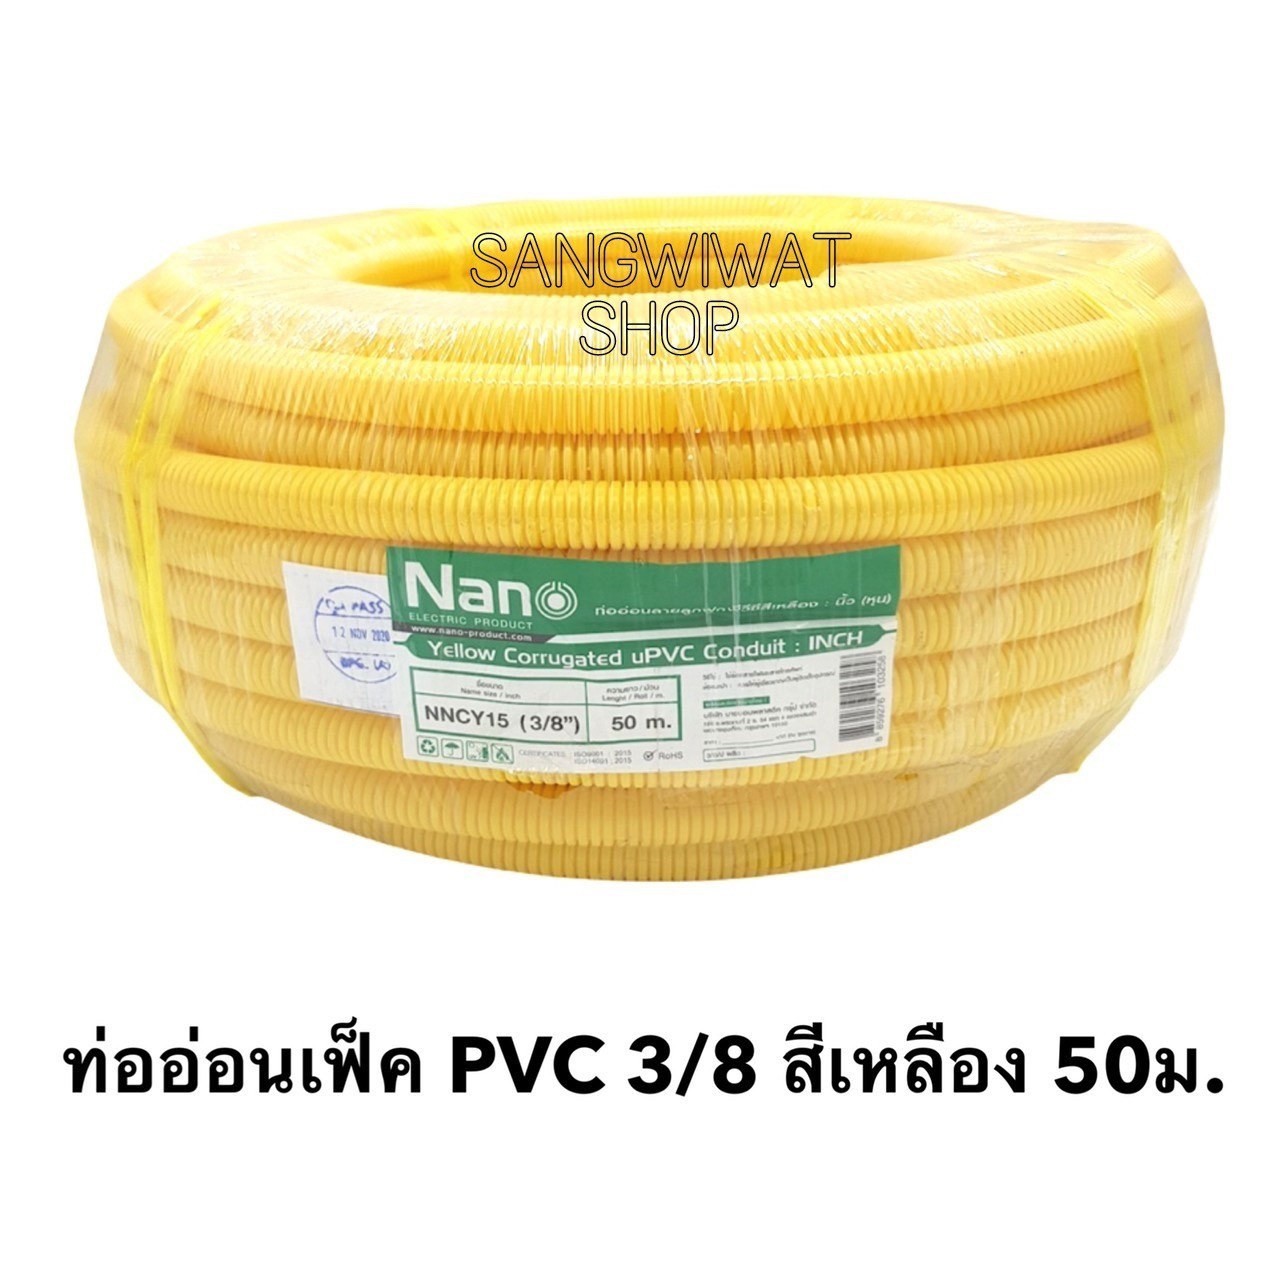 ท่อลูกฟูกPVC สีเหลือง ขนาด 3/8 (3หุน) ม้วนละ 50 ม. NaNo ท่อย่น ท่ออ่อน ท่อเฟล็ก ท่อ flex pvc